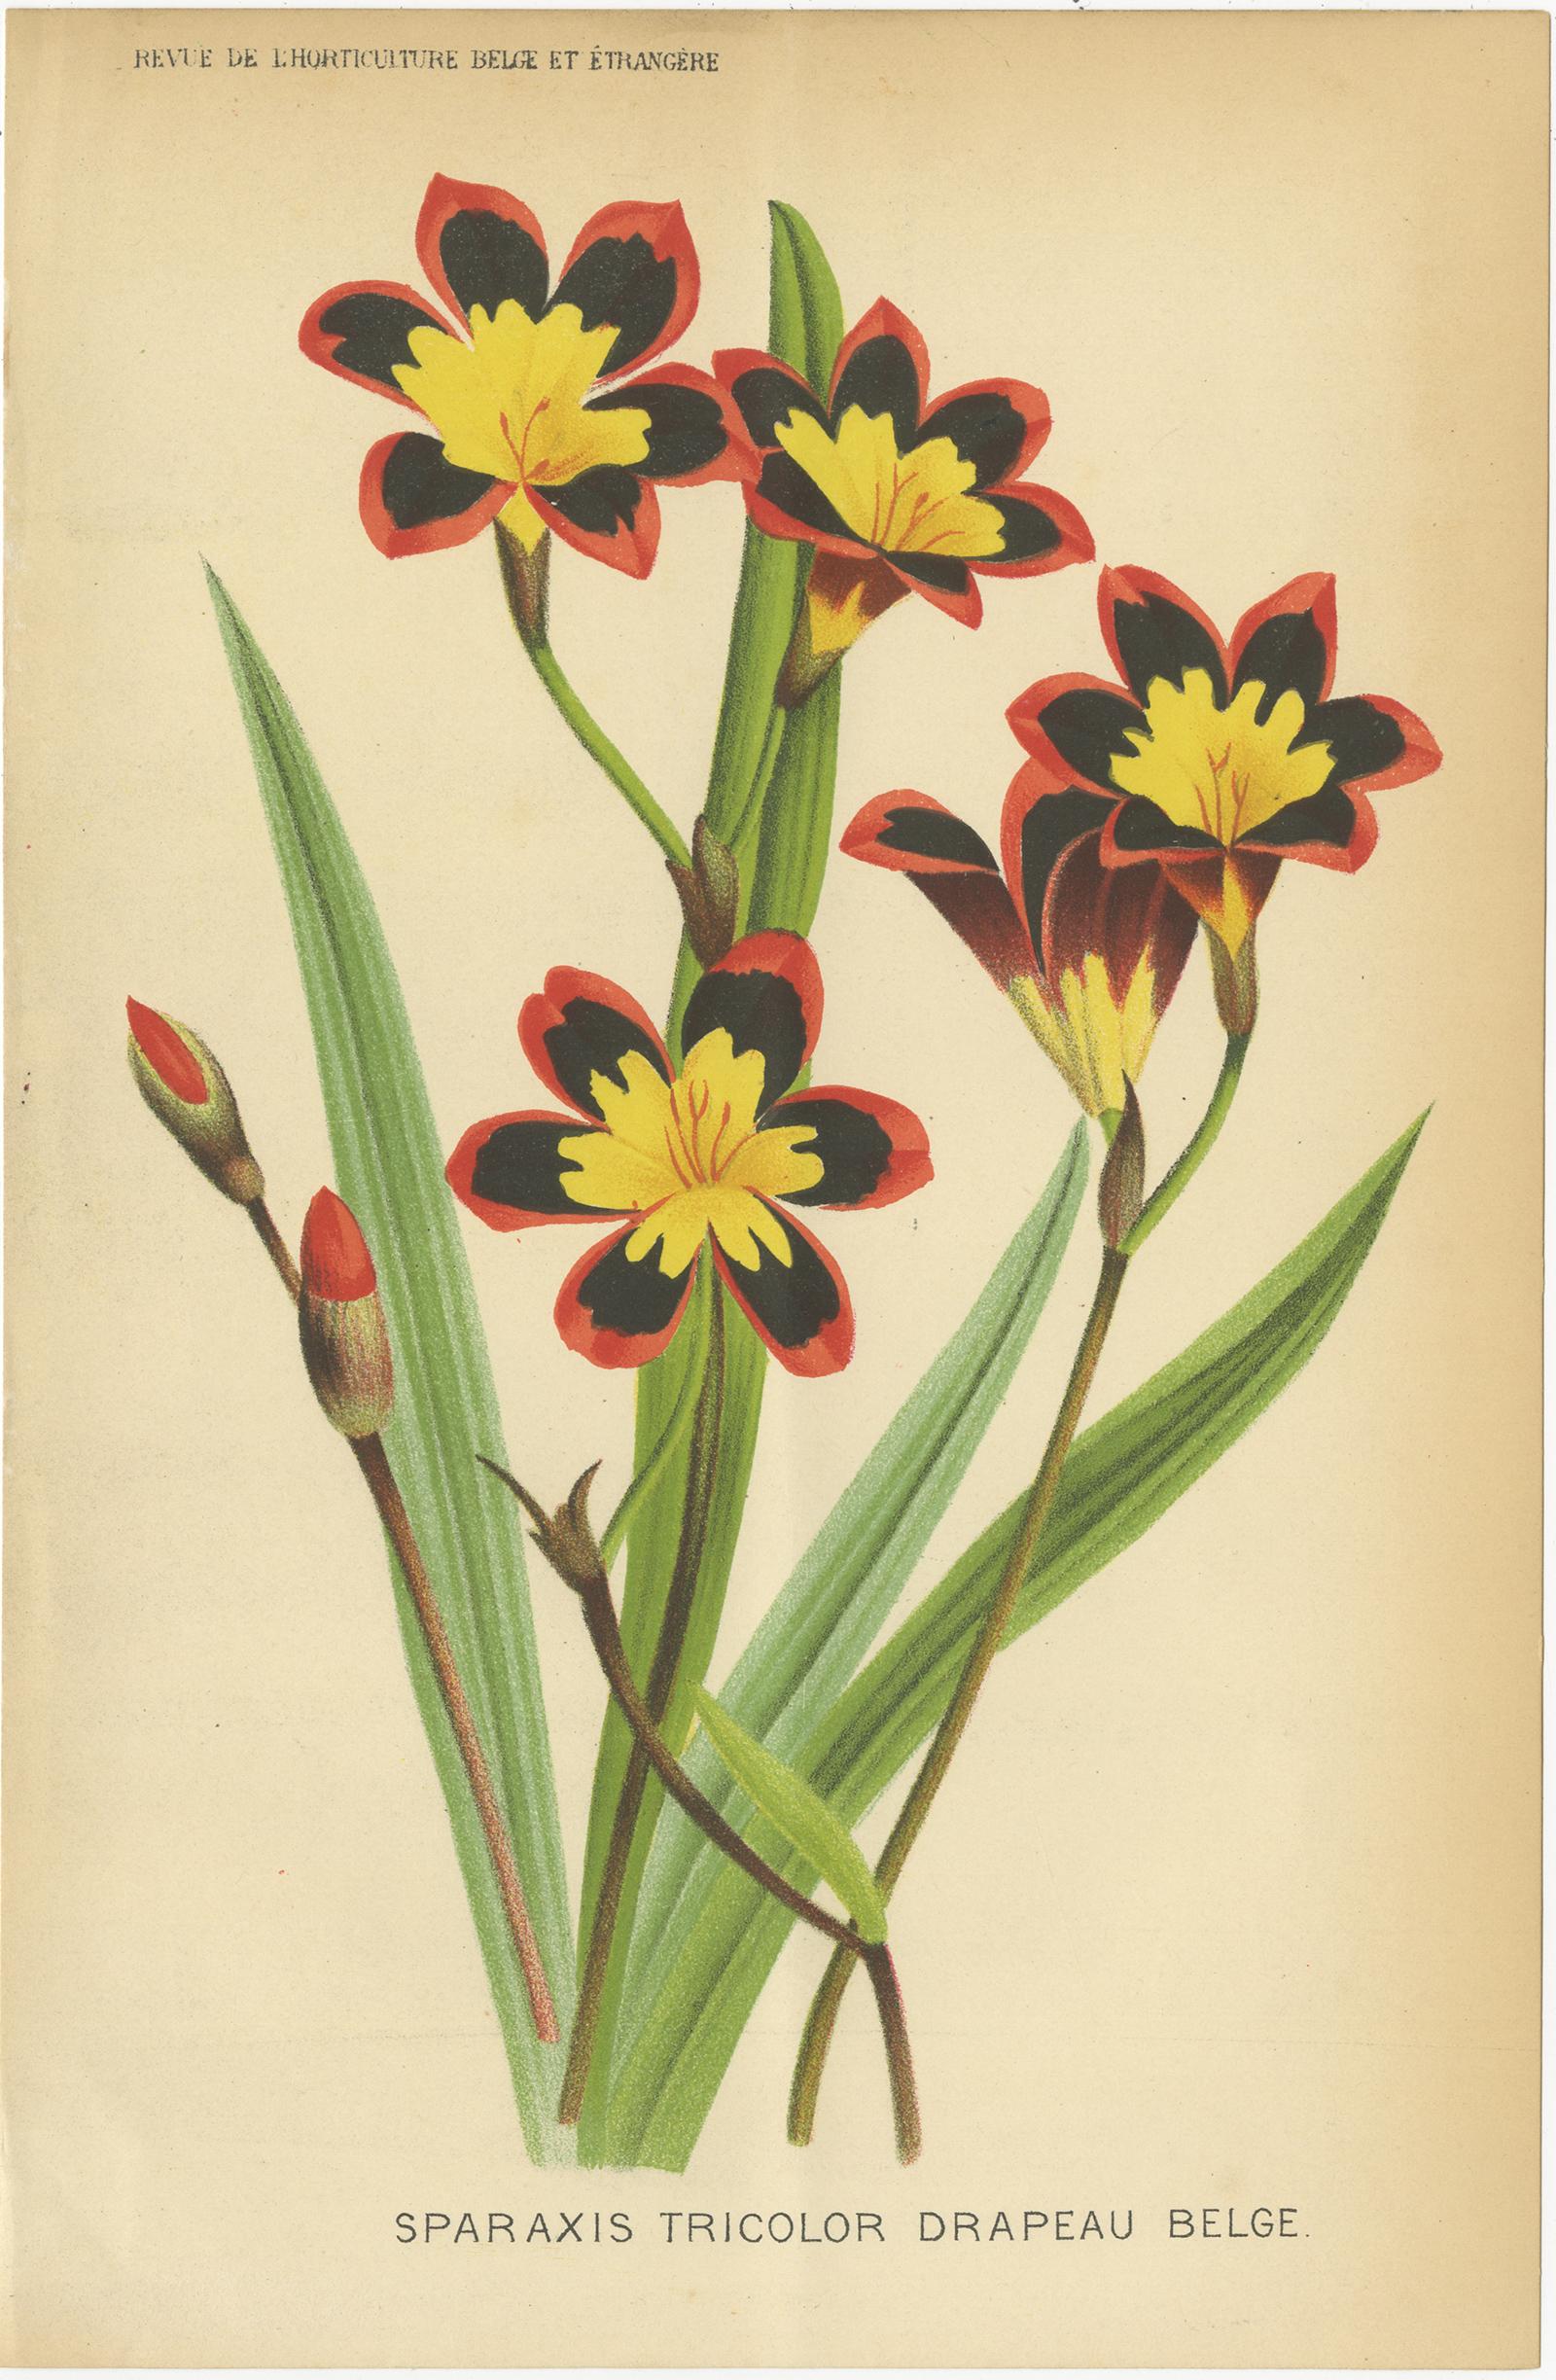 Ensemble de trois gravures botaniques anciennes intitulées 'Sparaxis Tricolor Drapeau Belge - Coleus le Progres - Nouvelles variétés d'Abutilon'. Elle montre le sparaxis tricolor (fleur arlequin), une espèce de coleus et la plante à fleurs abutilon.